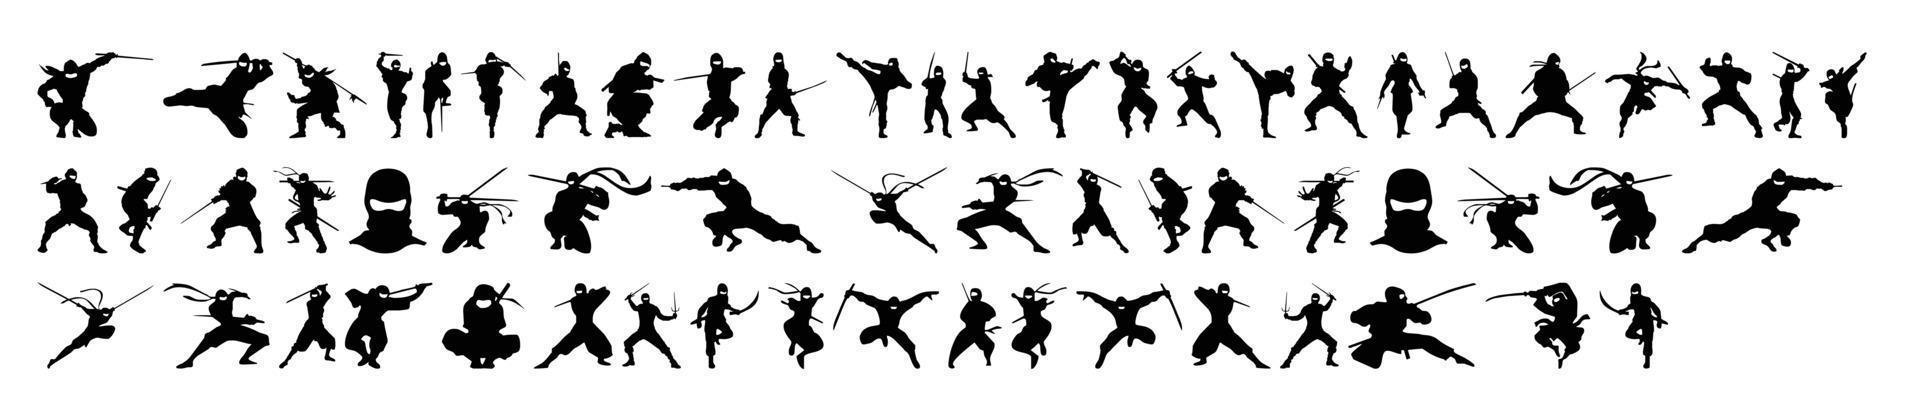 raccolta di vettori di silhouette ninja su sfondo bianco